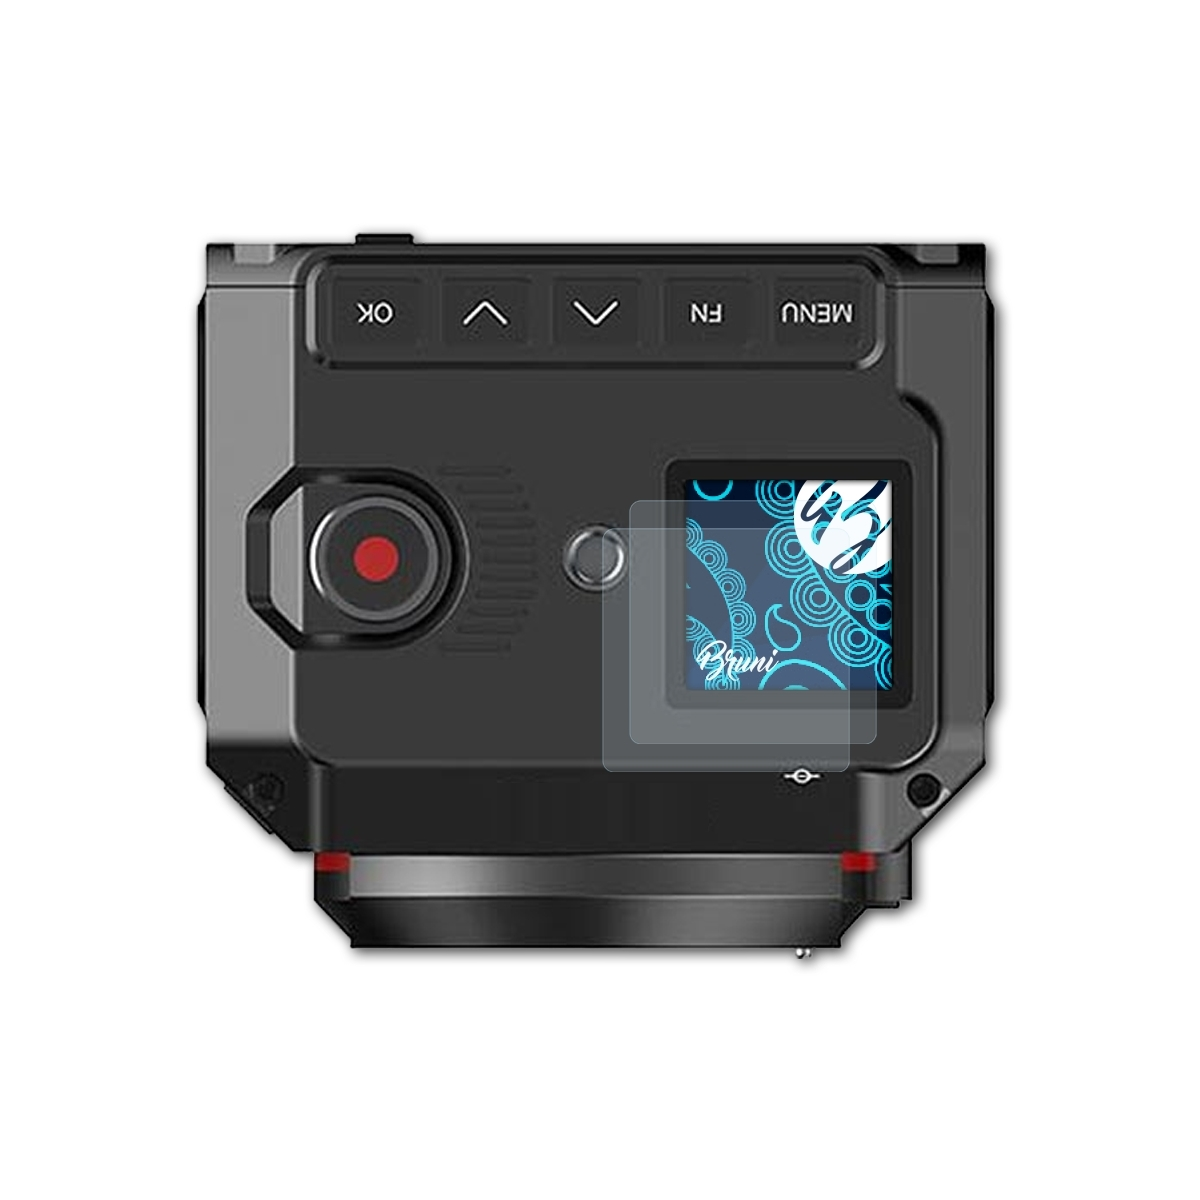 BRUNI 2x Basics-Clear Schutzfolie(für Z-Cam Camera) E2